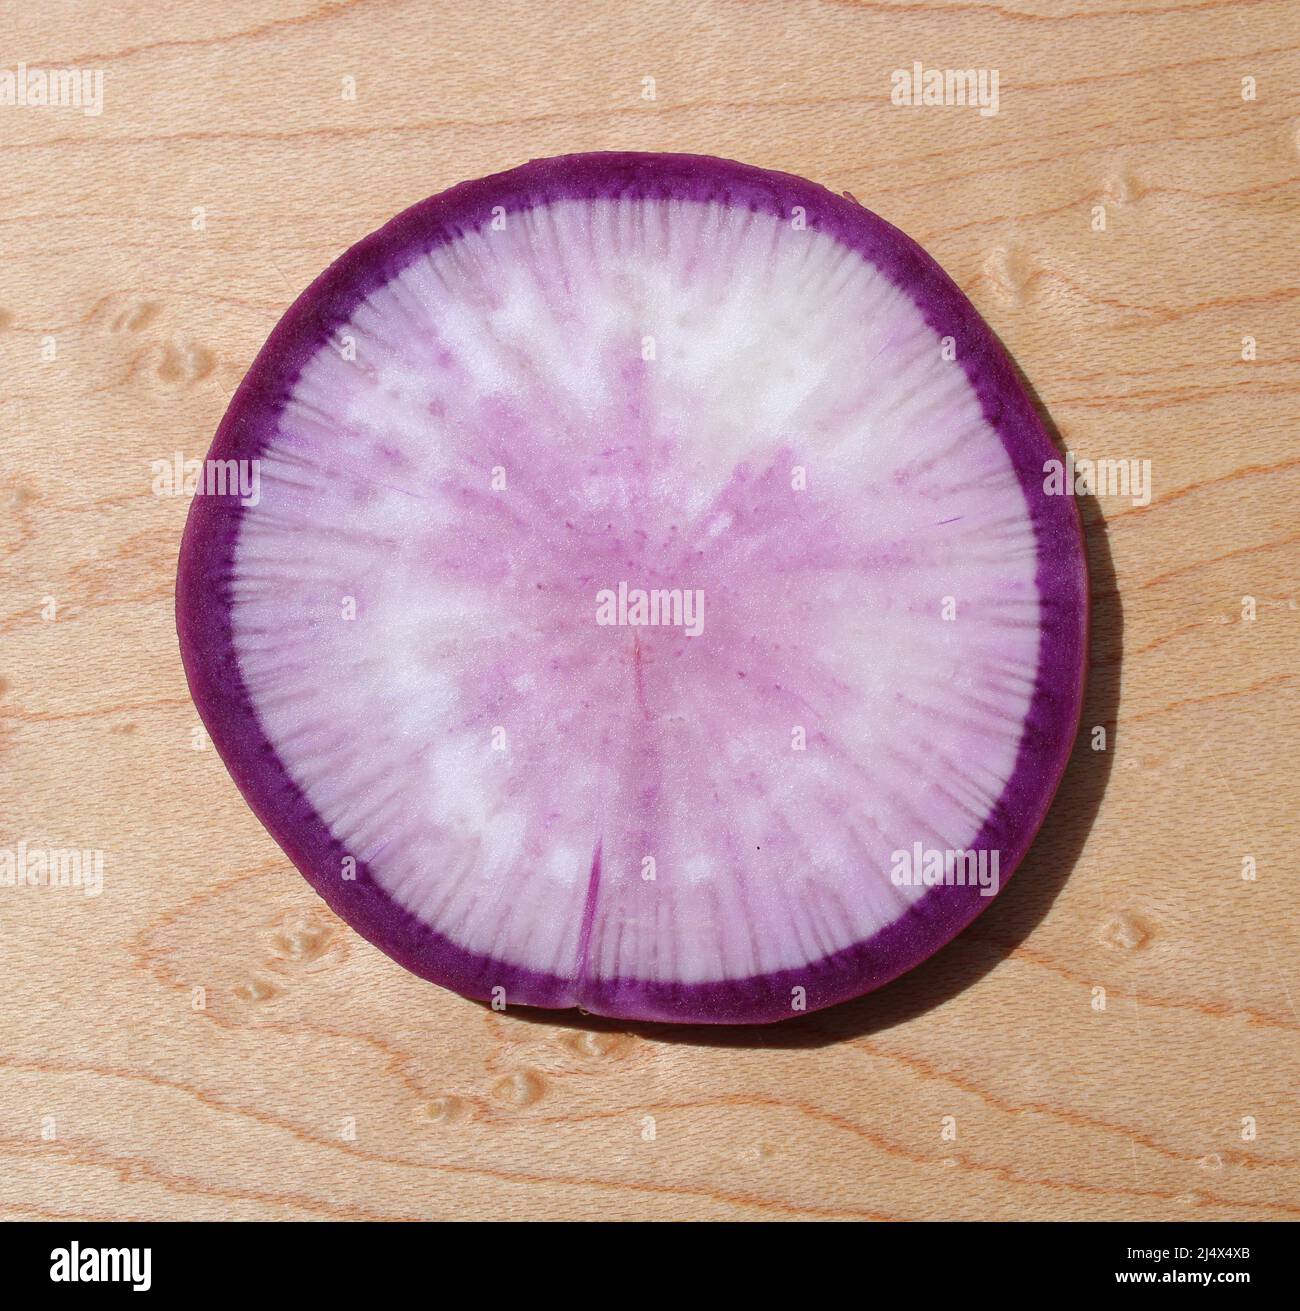 Un Closeup su una fetta rotonda di Ronda viola Foto stock - Alamy